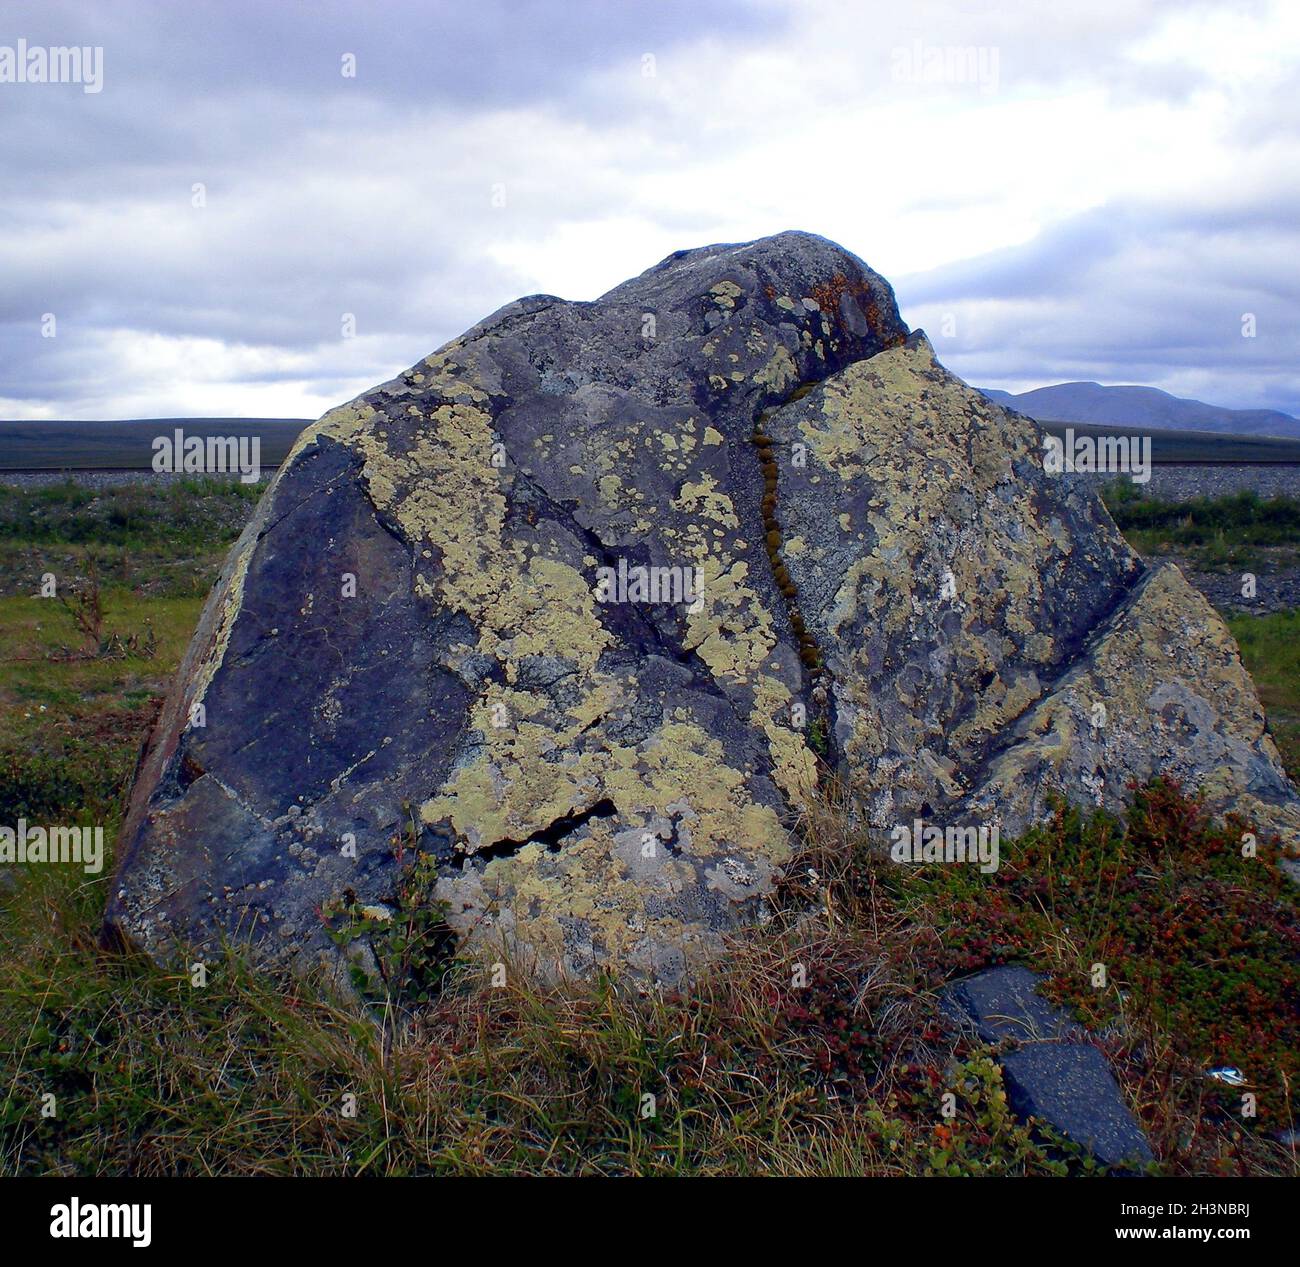 Felsen in der Taiga im russischen Norden. Ausgang zur Oberfläche von Graniten und Basalt. Stockfoto